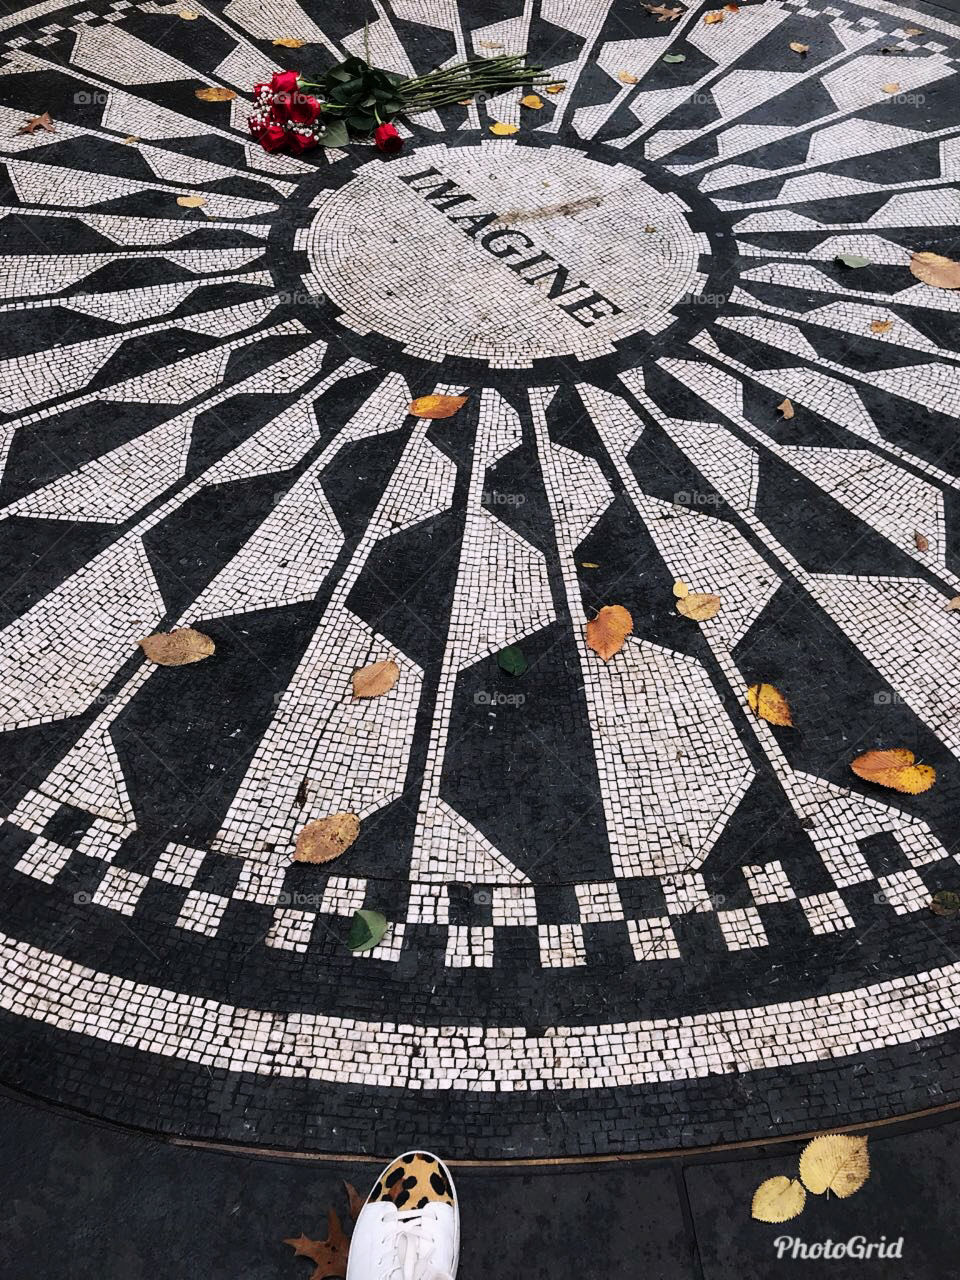 Jonh Lenon #newyork #jonhlenon #musica #lembrancas #acervo #viagem #viajando #memorial #lembrancas #musica #anos80 #pessoas